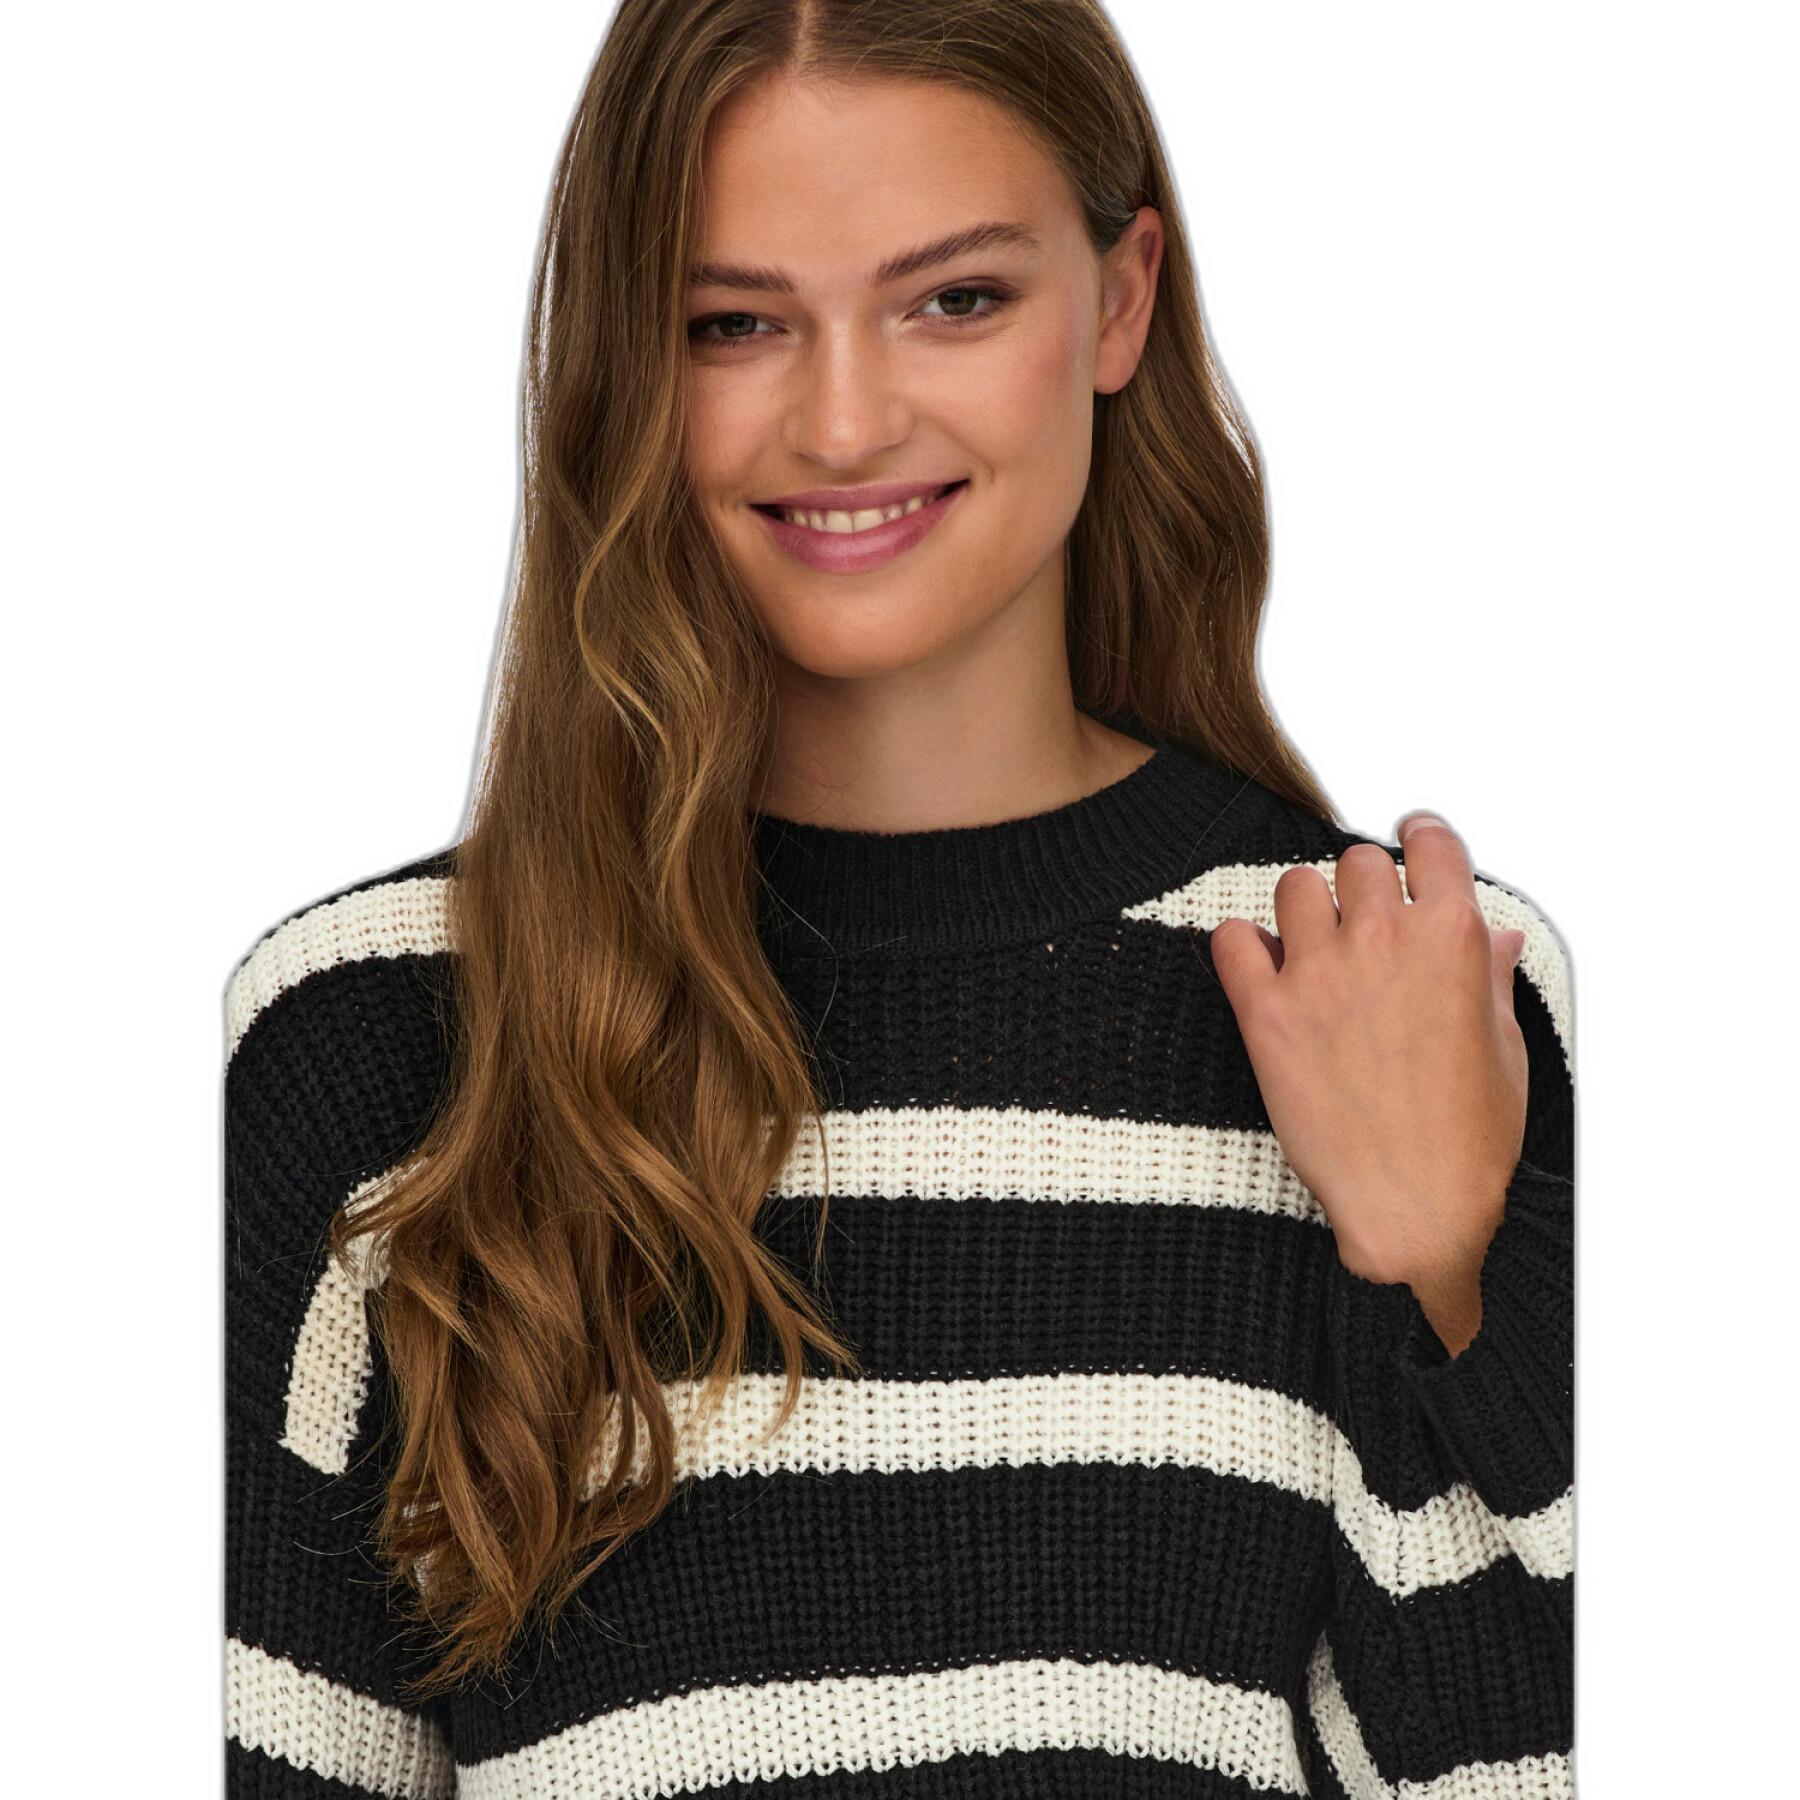 Women's knitted sweater JDY Justy Stripe